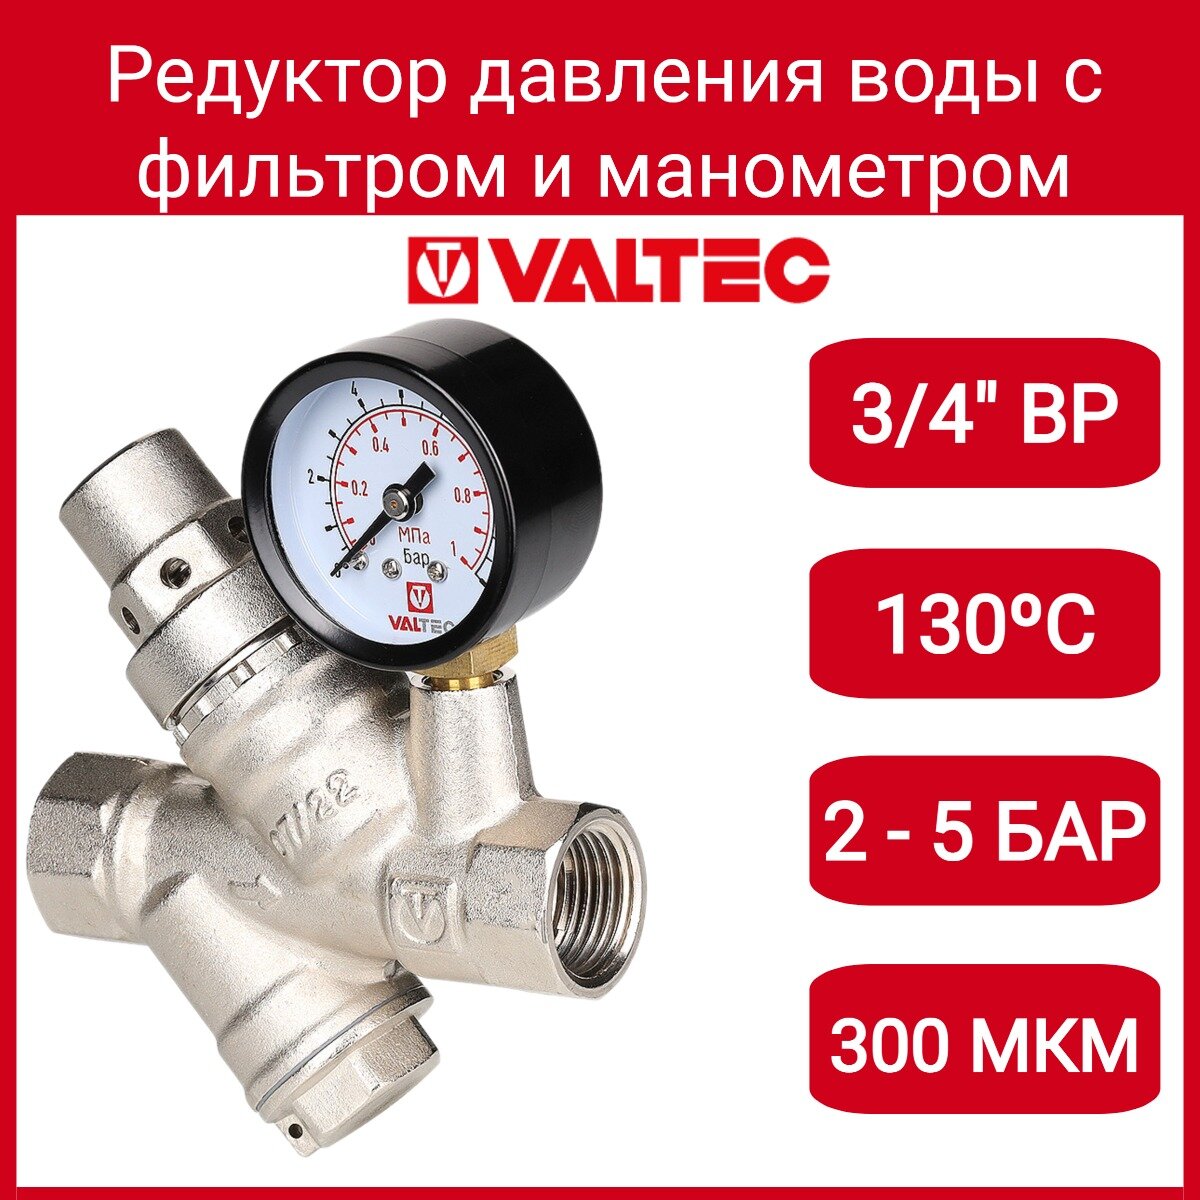 Регулятор давления Valtec VT.082.N.05 с фильтром и манометром, 2-5 бар, 3/4" - фото №3